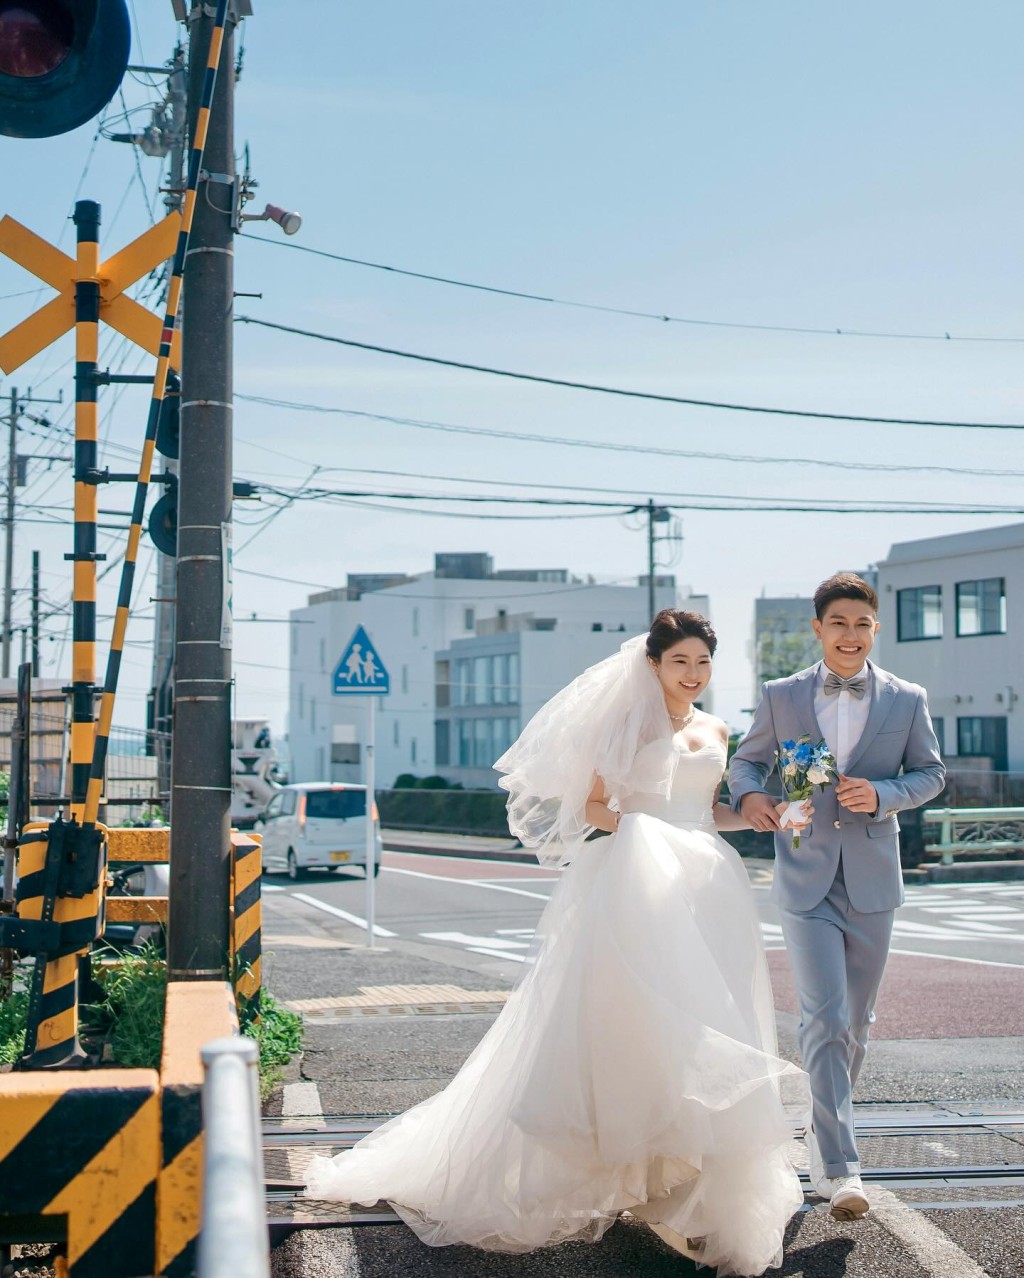 許惠菁去年12月中與與學霸金融材俊男友Shane結婚，在社交平台貼上婚紗相。